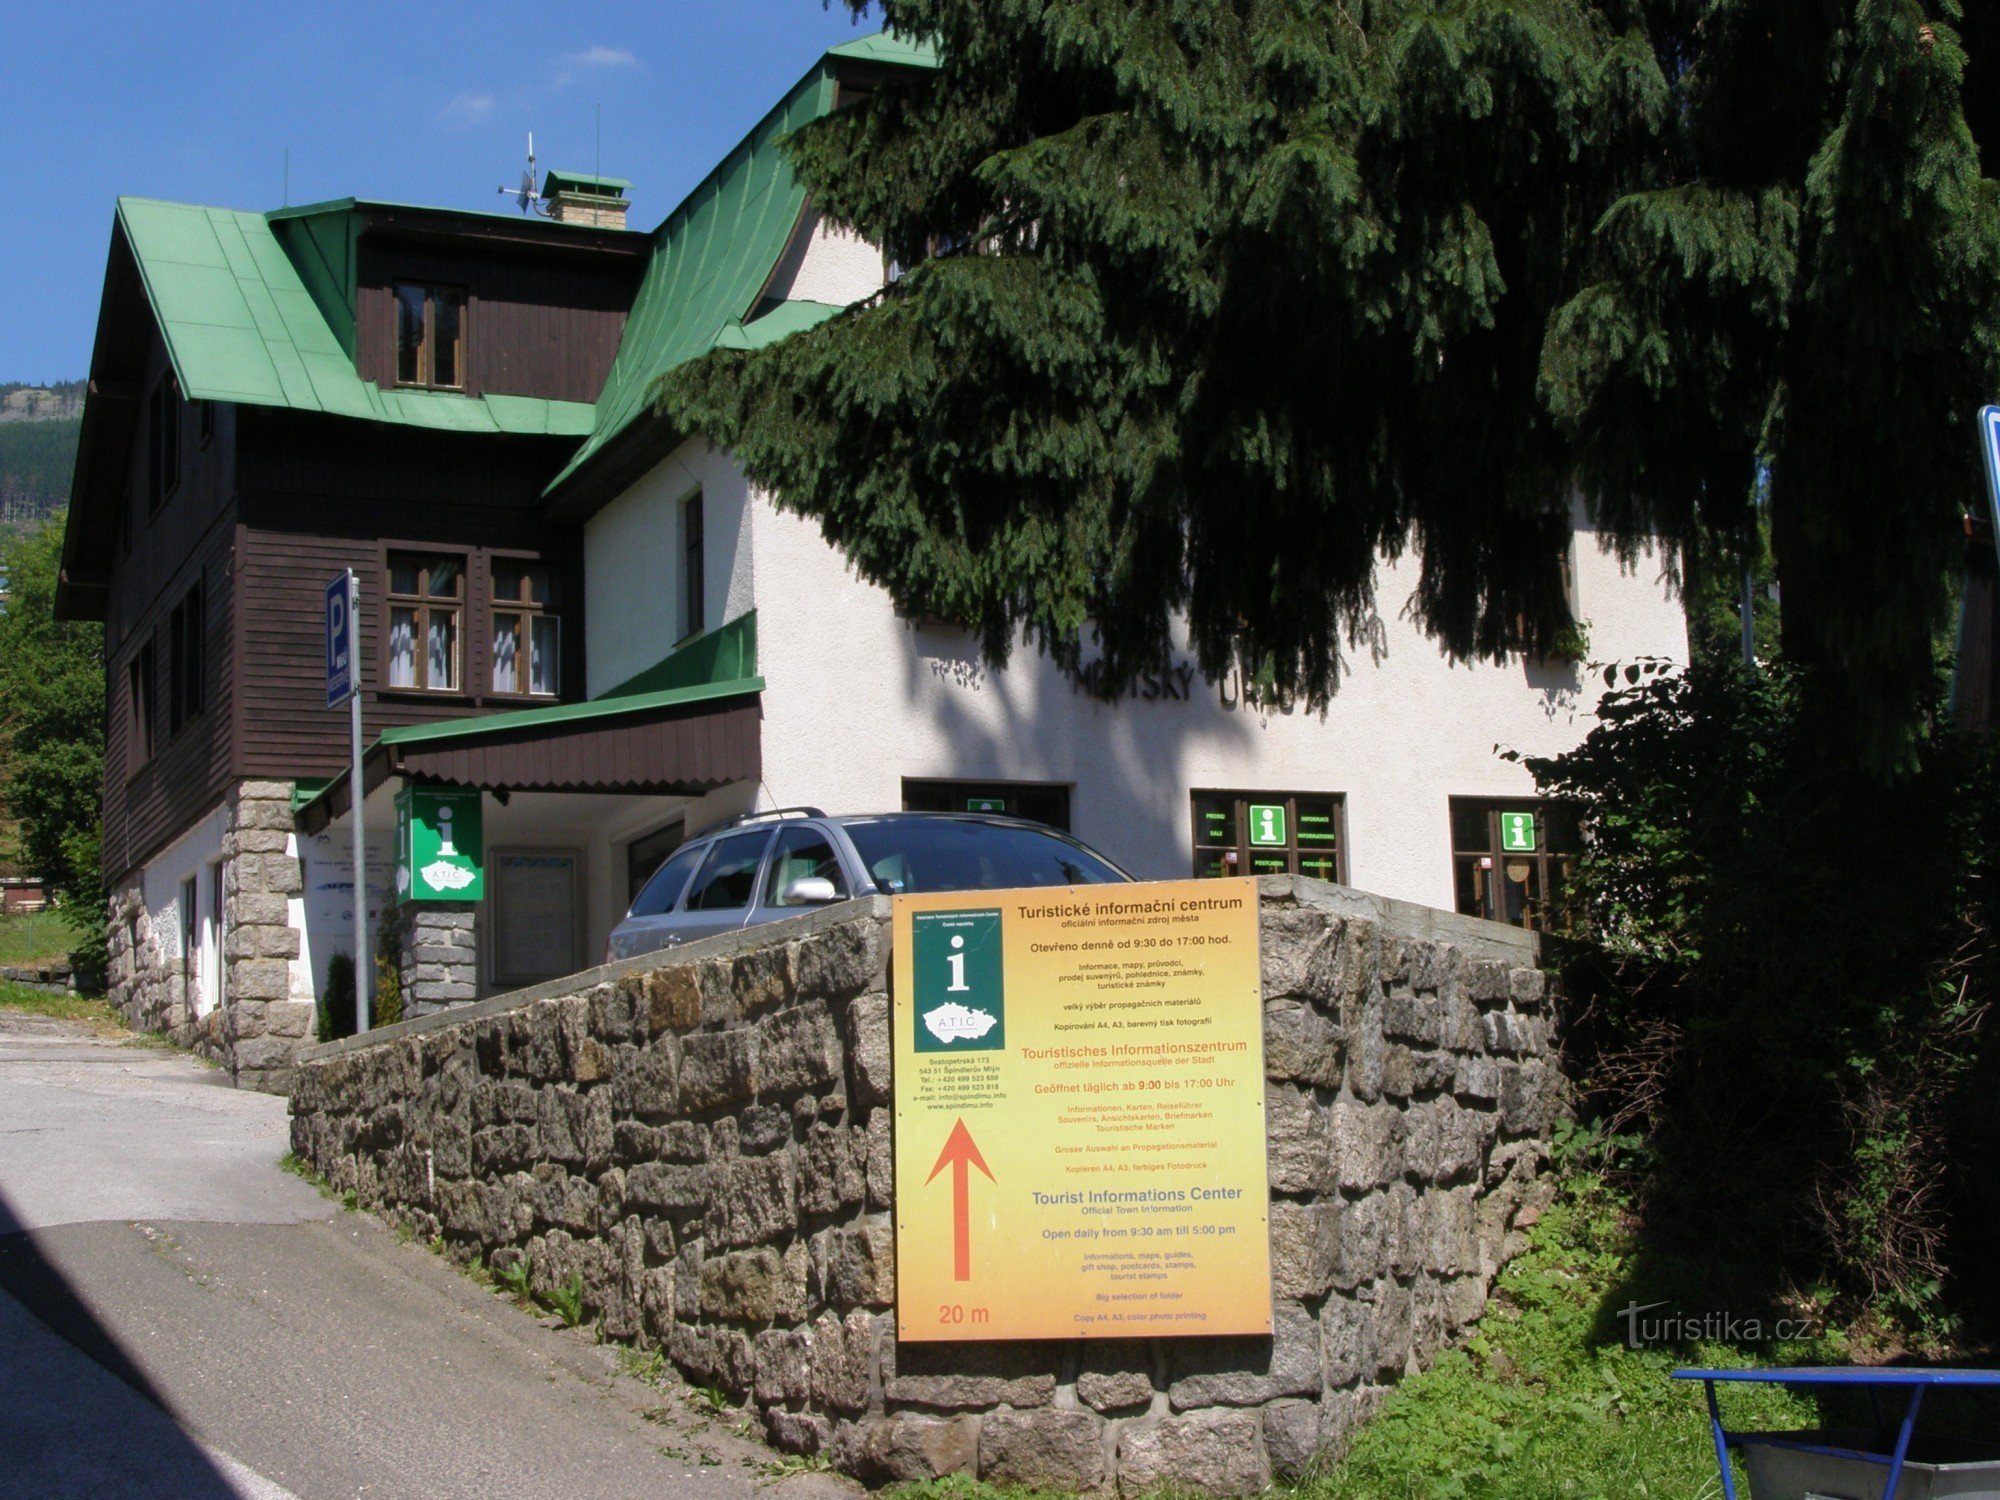 Špindlerův Mlýn - tourist information center - year 2015